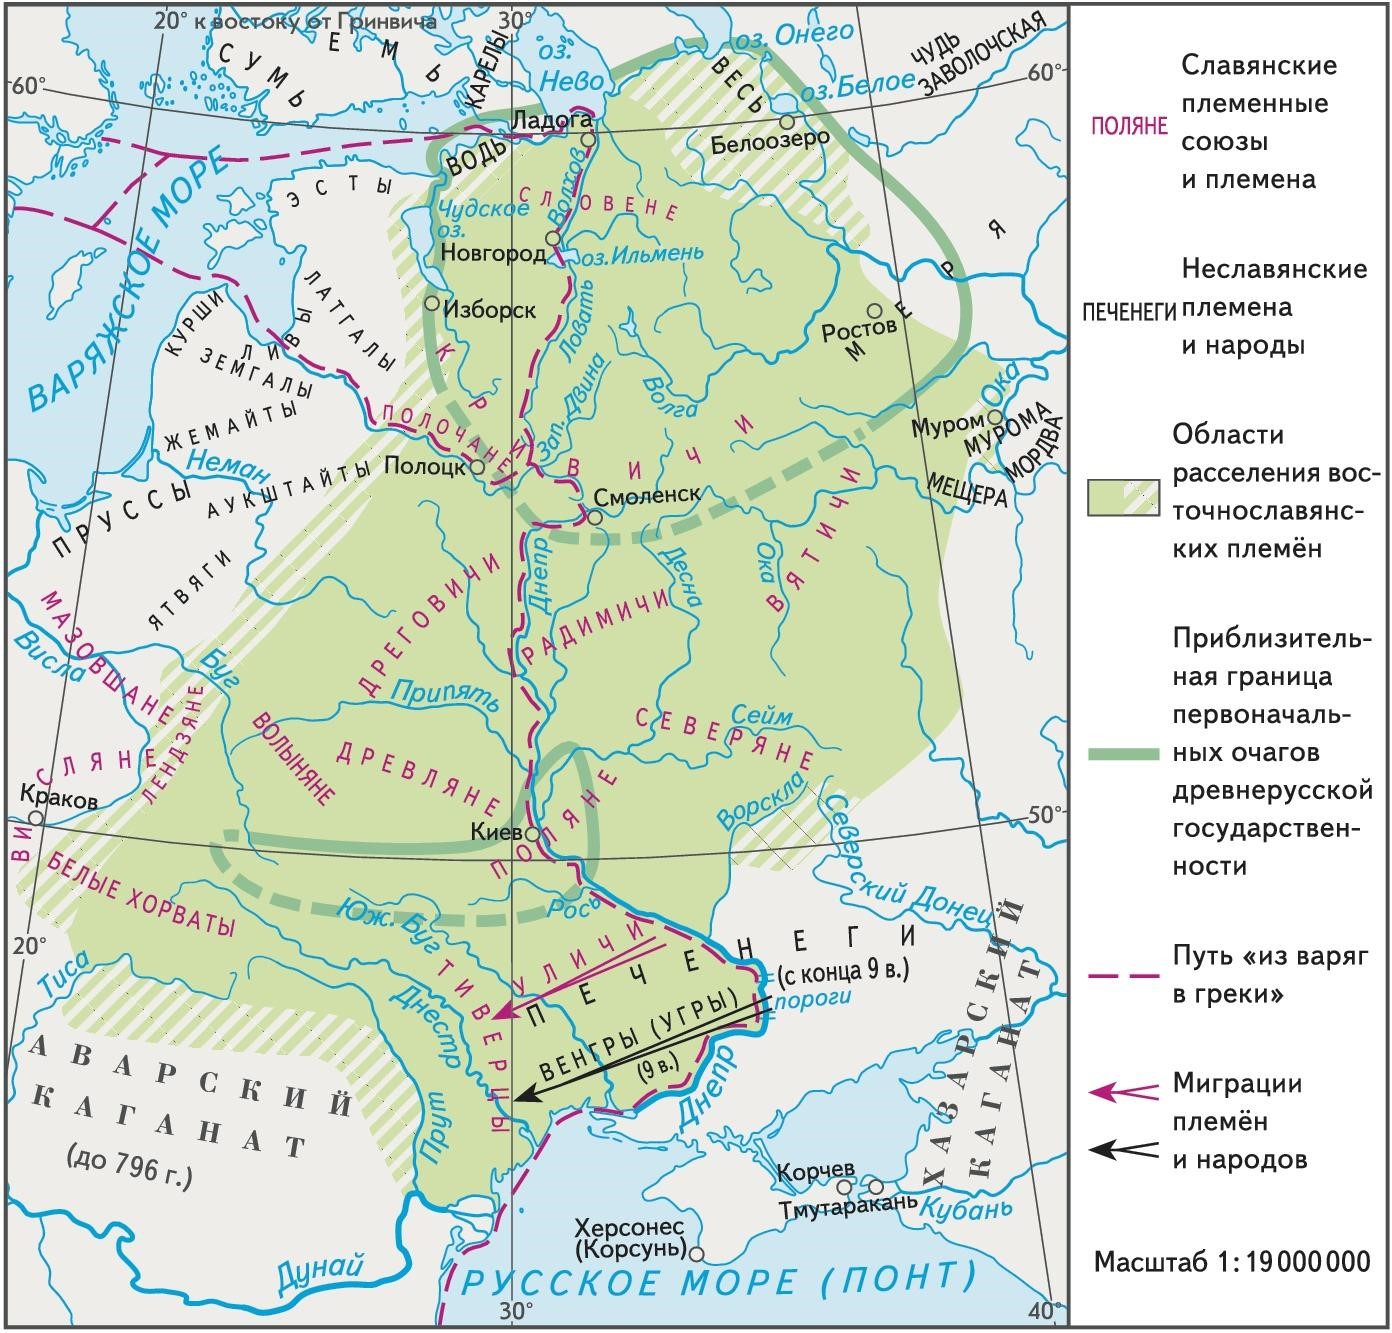 Карта 1. Образование государства Русь. IX в.